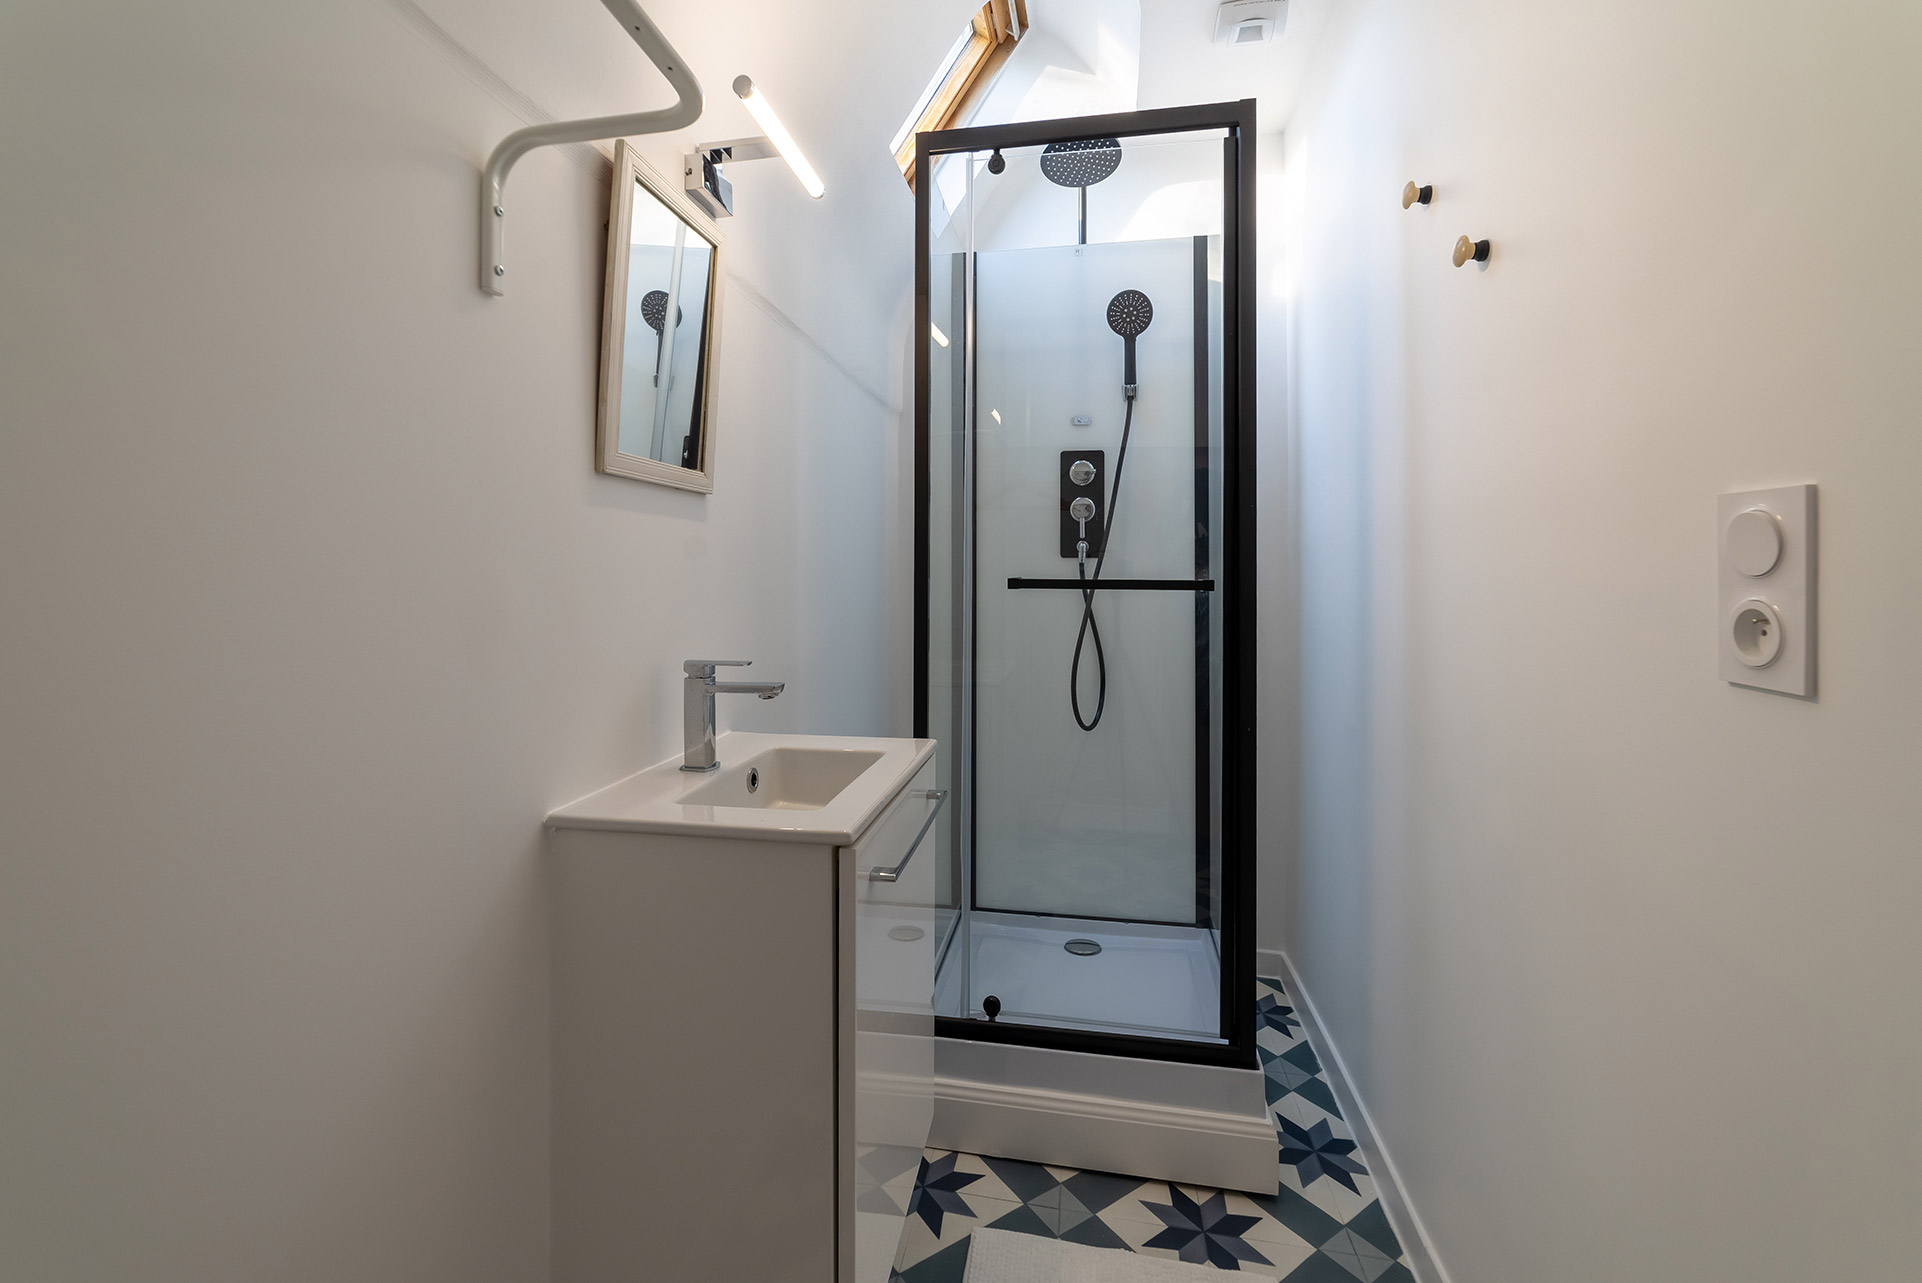 Salle de douche de la Ninette au Domaine de Maubuisson, location de vacances à Ver-sur-Mer en Normandie, tout proche des plages du débarquement